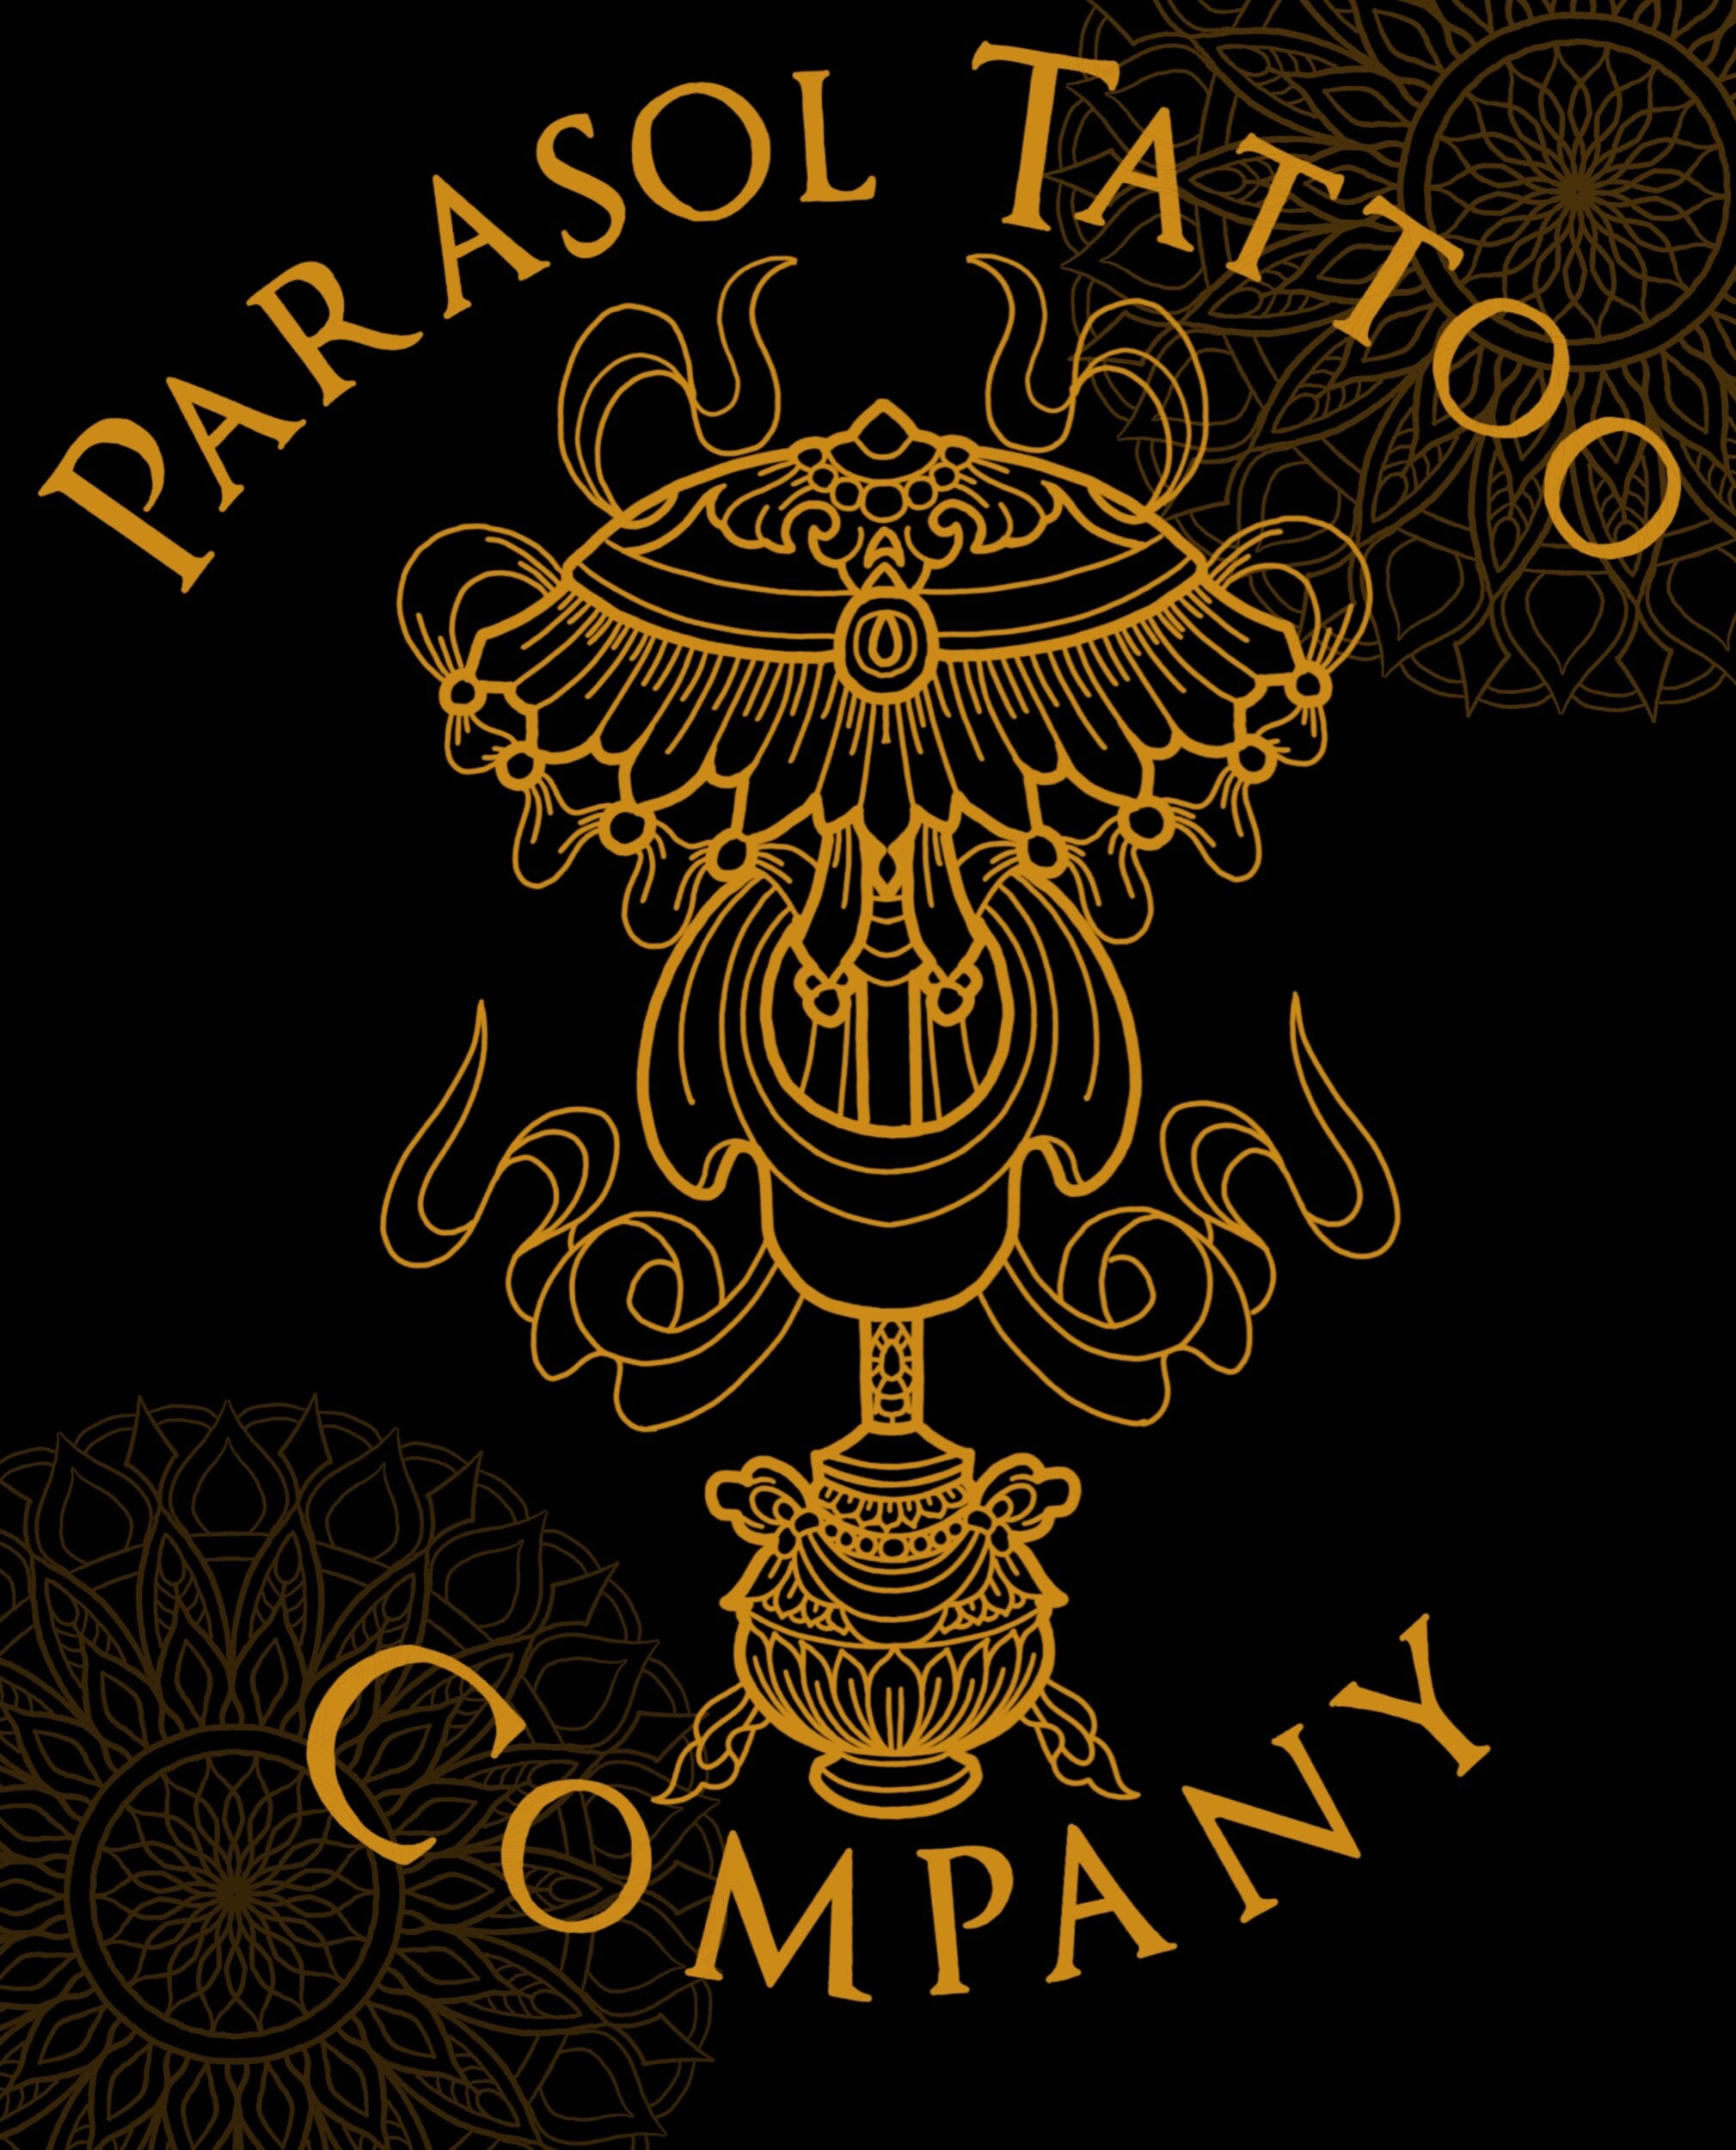 Parasol Tattoo Company